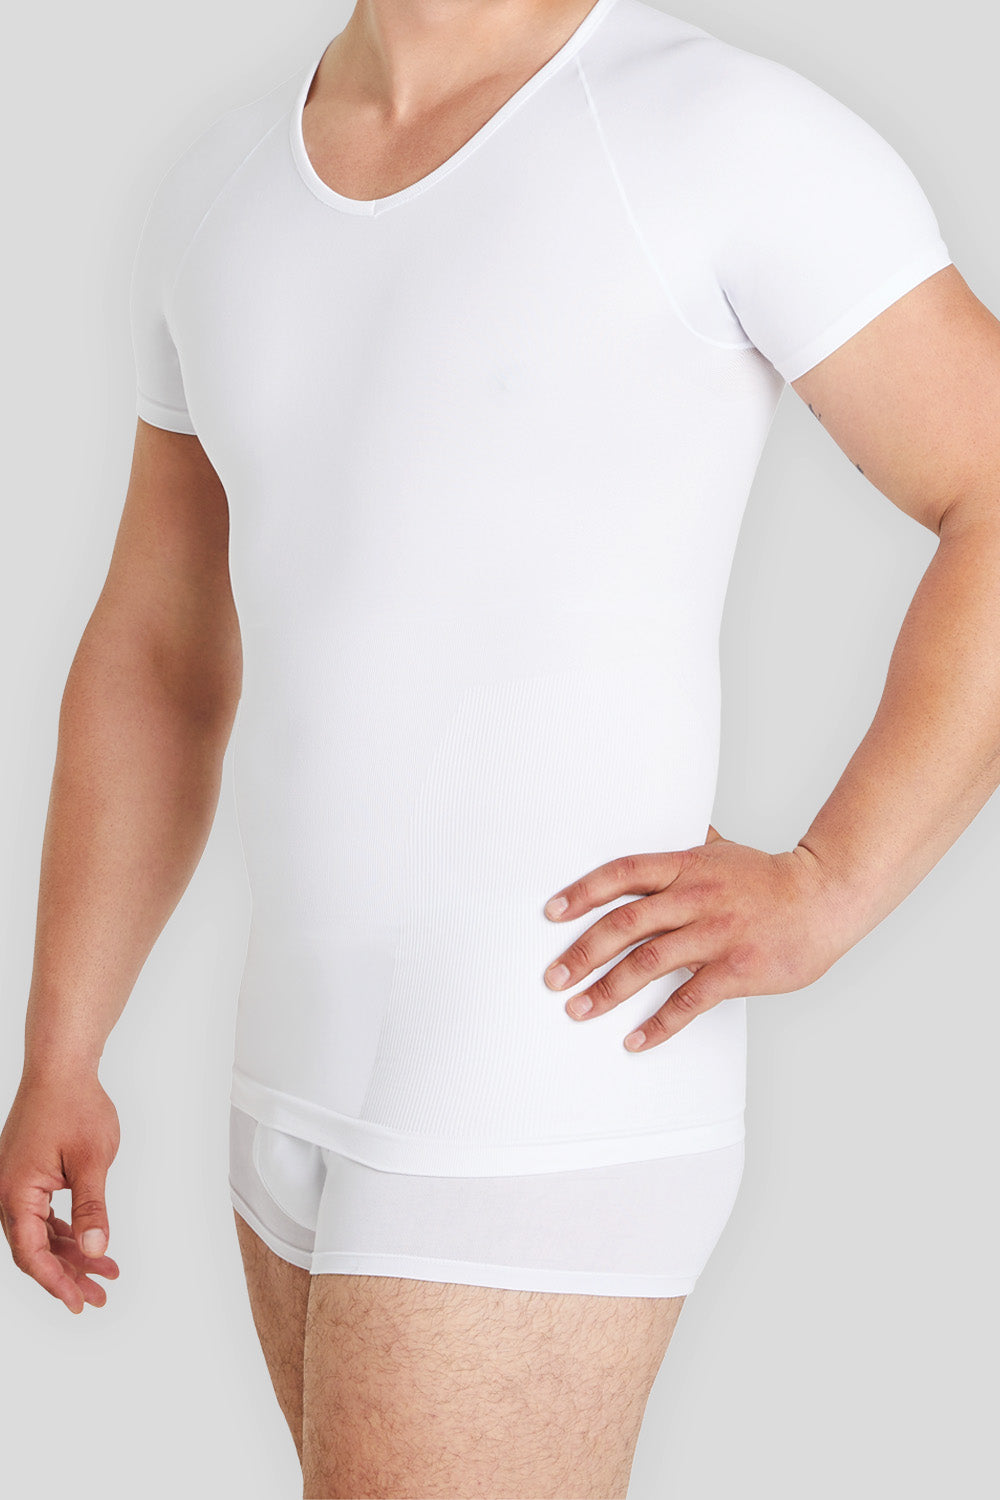 Model präsentiert perfekt sitzendes Shapewear Unterhemd für Herren. Entdecken Sie unsere Auswahl an formgebender Unterwäsche für einen schlanken Look und maximalen Komfort.